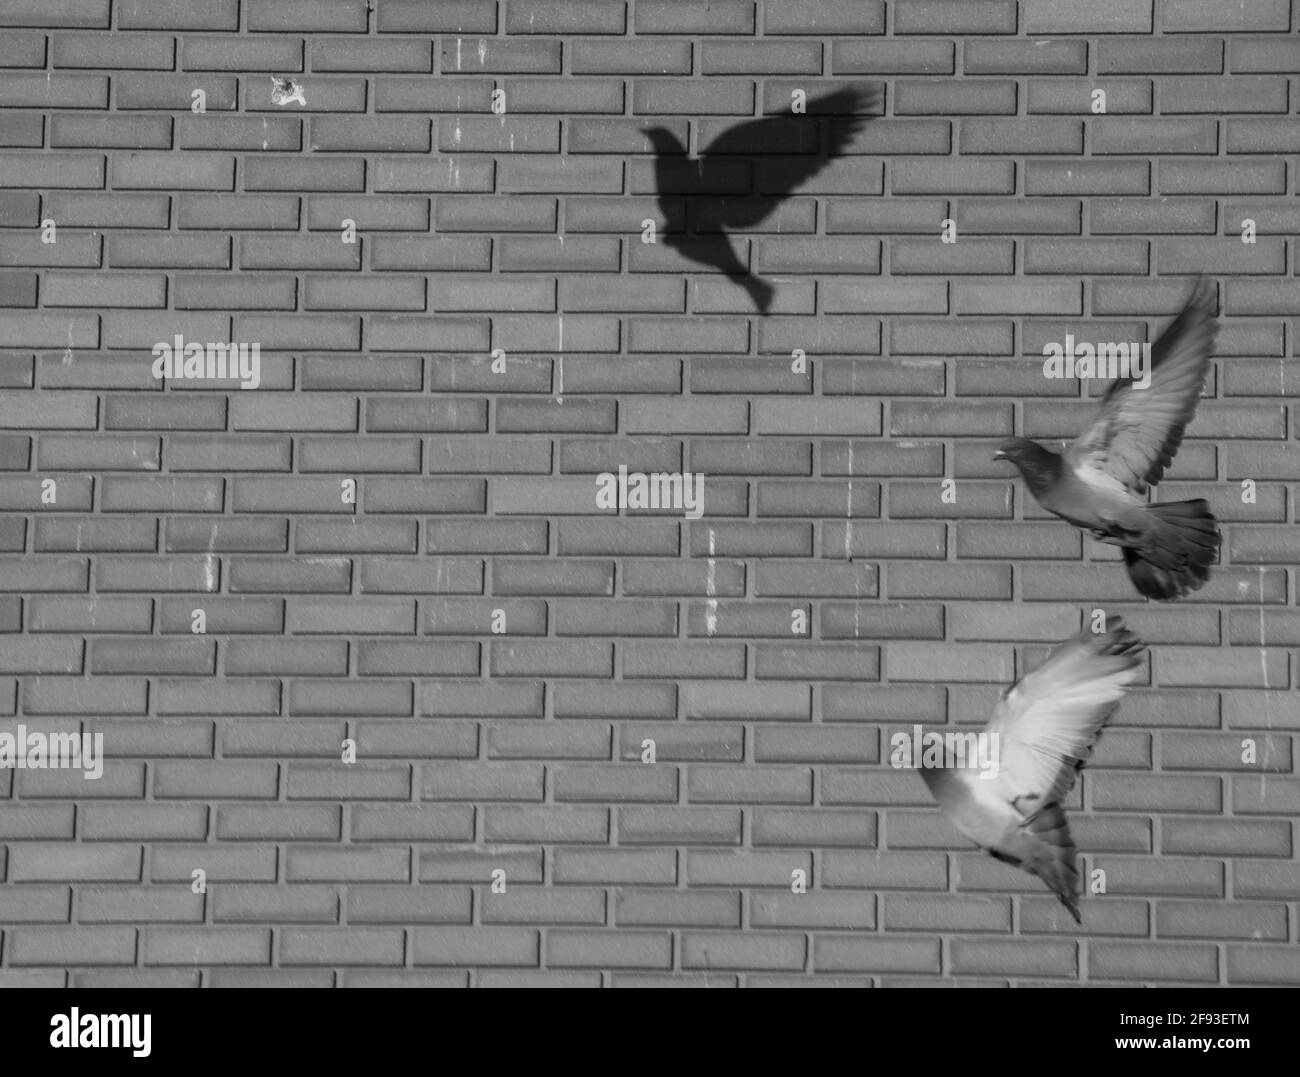 fotografia in bianco e nero di due piccioni in volo creazione un'ombra di un terzo piccione su un mattone grigio muro spazio vuoto su muro di mattoni per sfondo Foto Stock